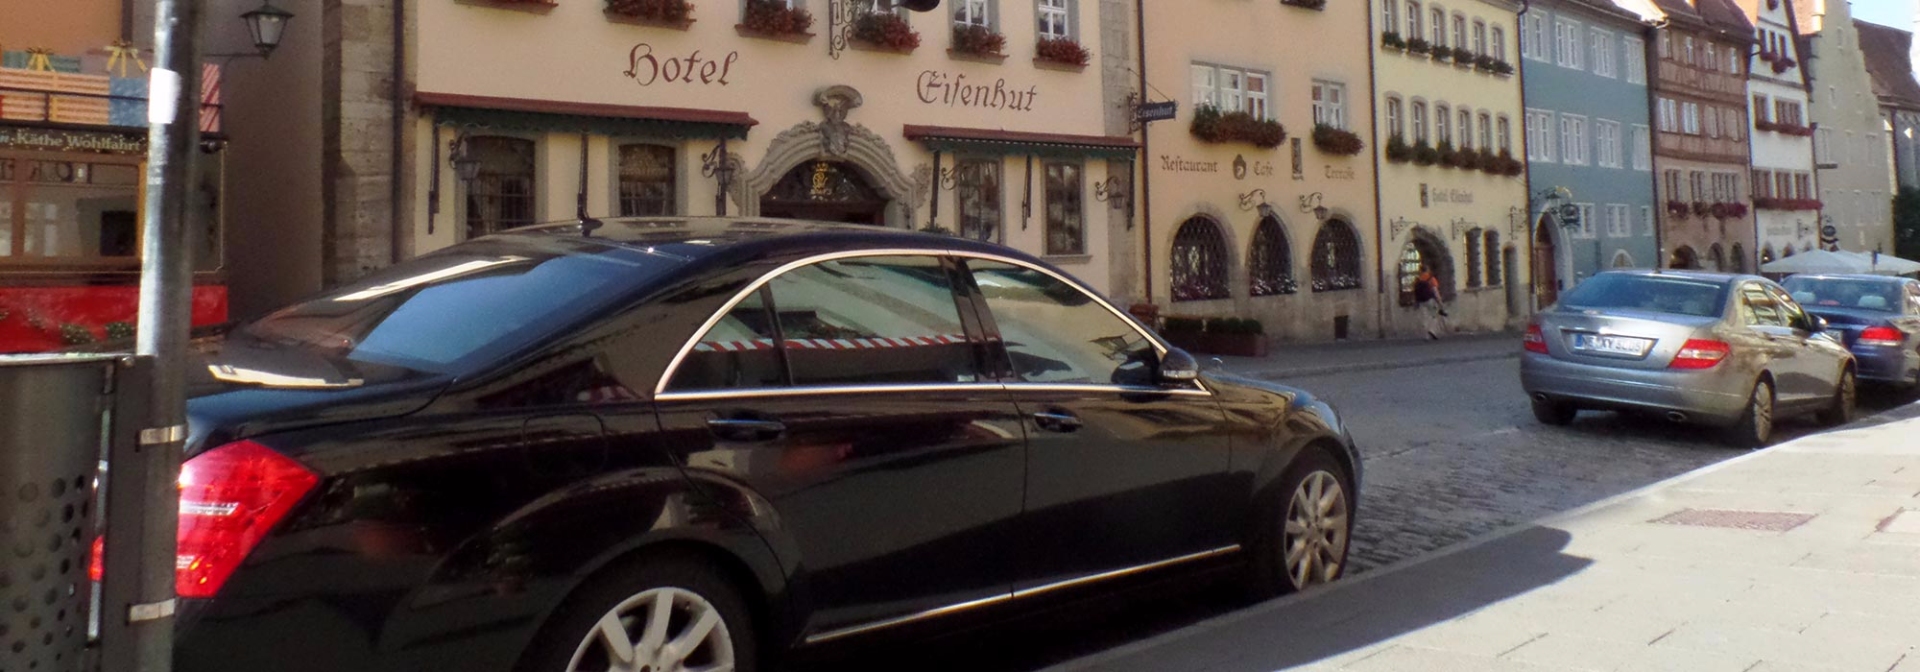 rothenburg-limousinenservice-hotel-eisenhut.jpg